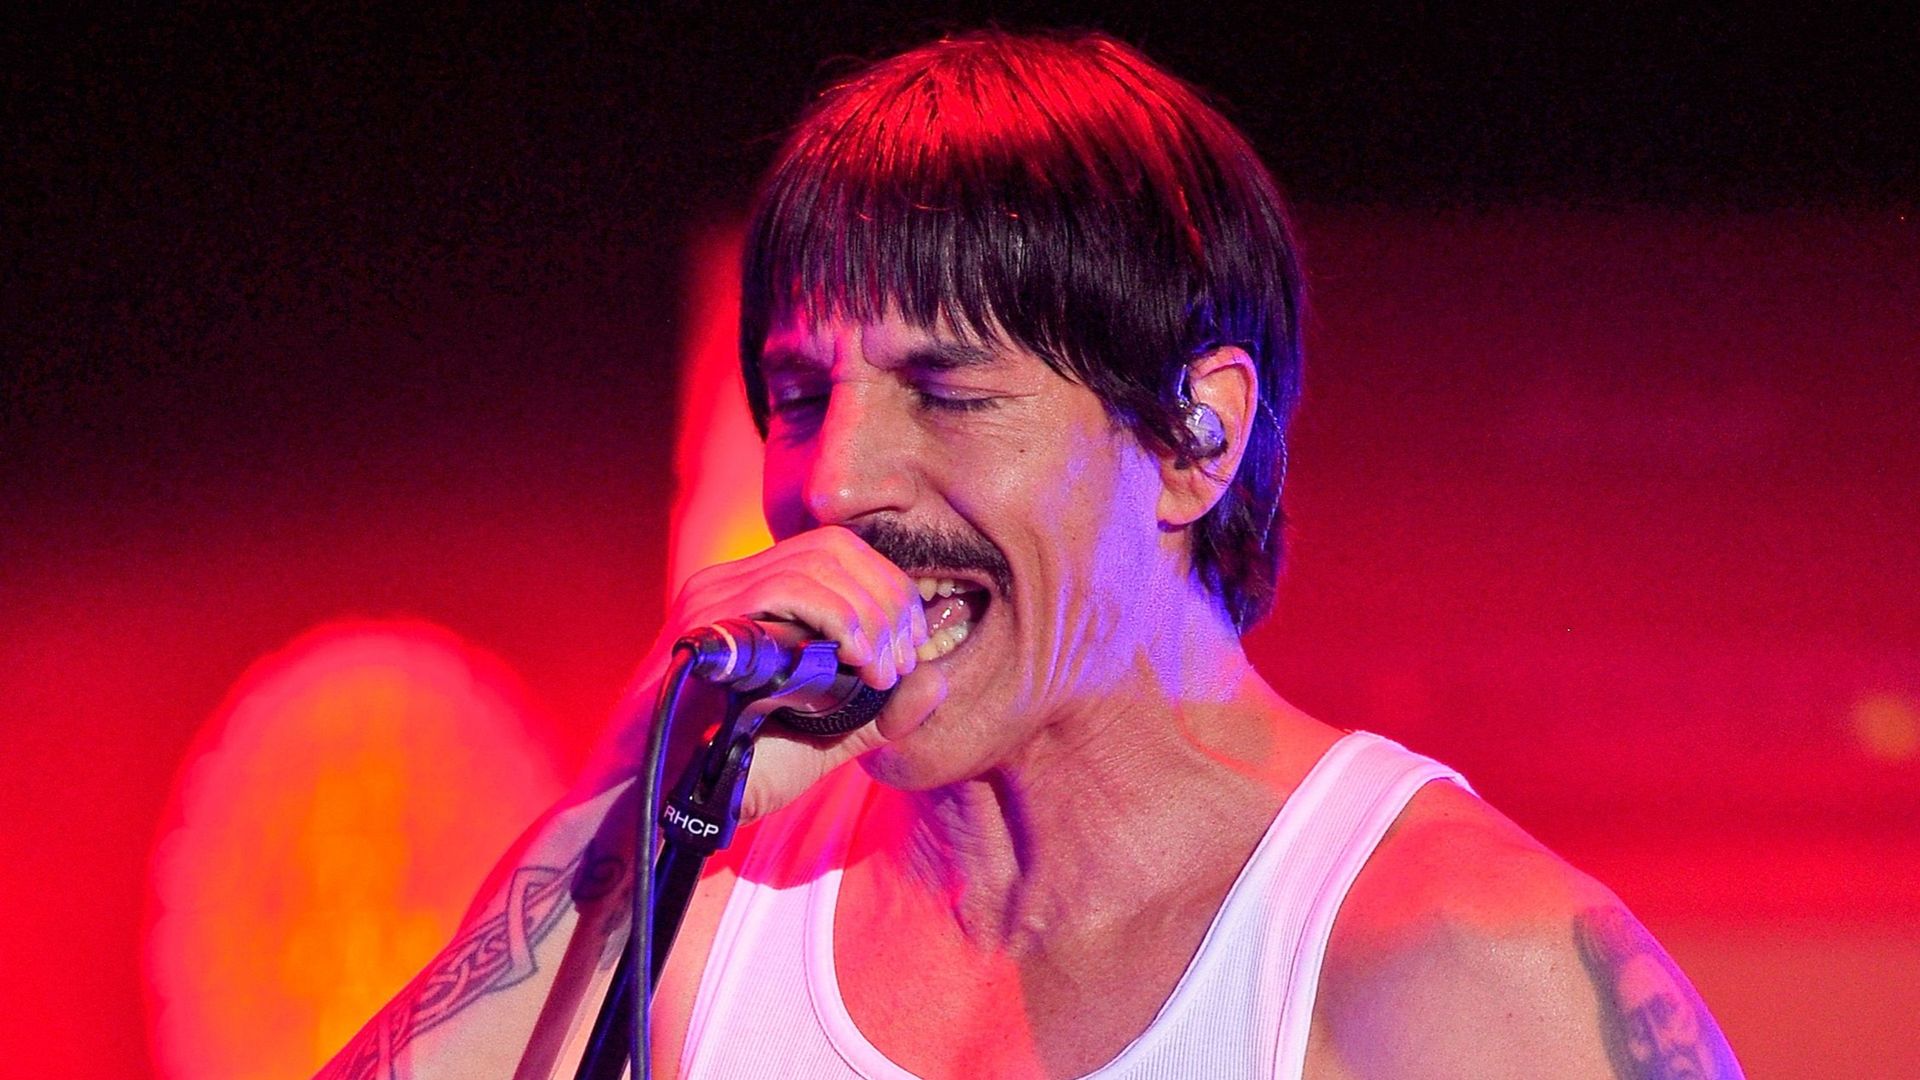 Le leader de Red Hot Chili Peppers emmené d'urgence à l'hôpital